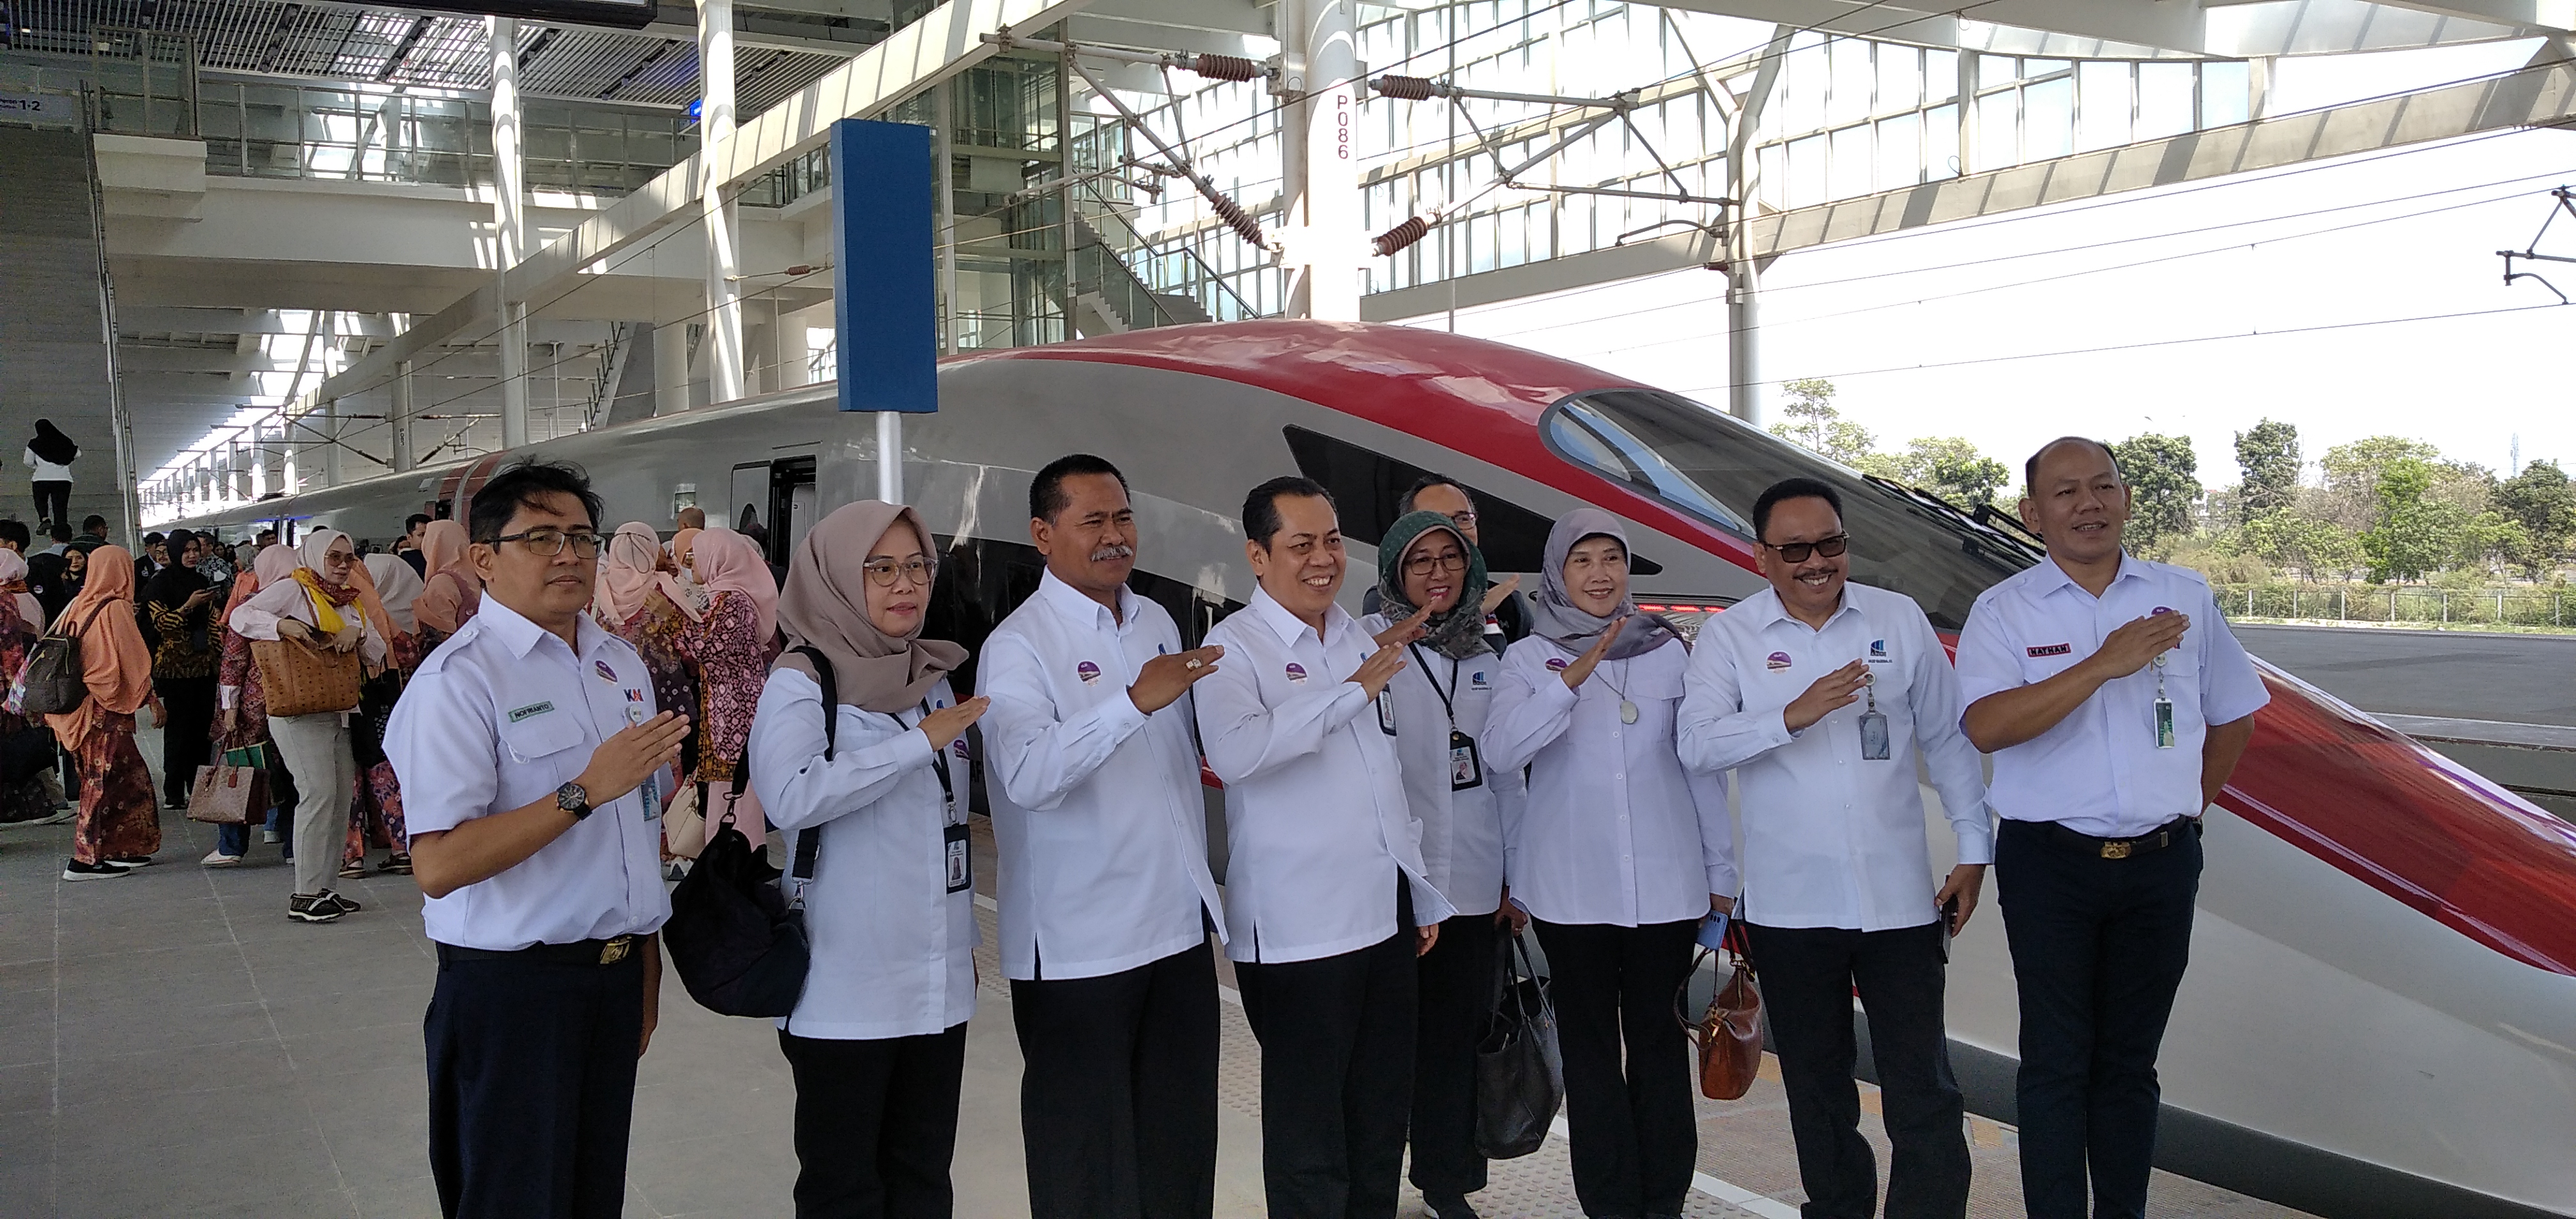 Plt. Kepala ANRI dan Pimpinan Tinggi Madya Uji Coba Publik Kereta Cepat Jakarta Bandung